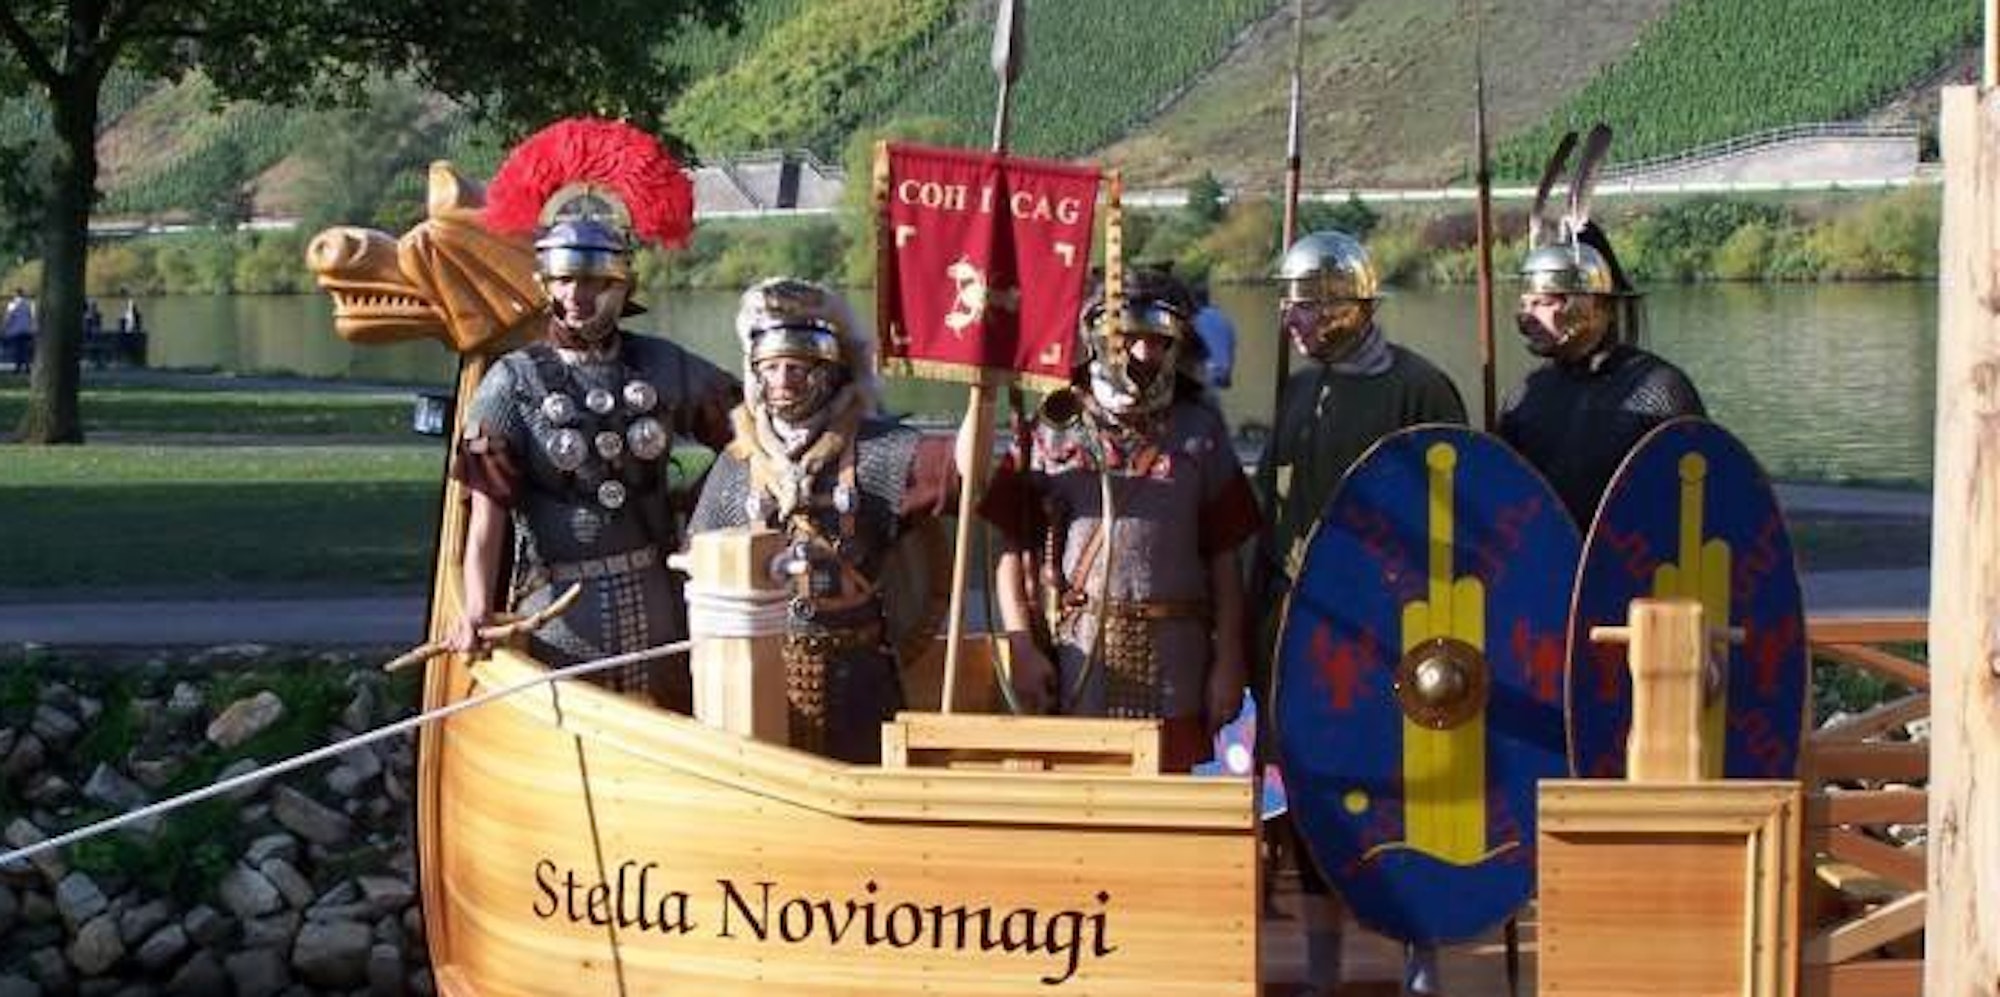 Das Römerweinschiff "Stella Noviomagi" in Neumagen ist nur eines von vielen tollen römischen Ausflugszielen.